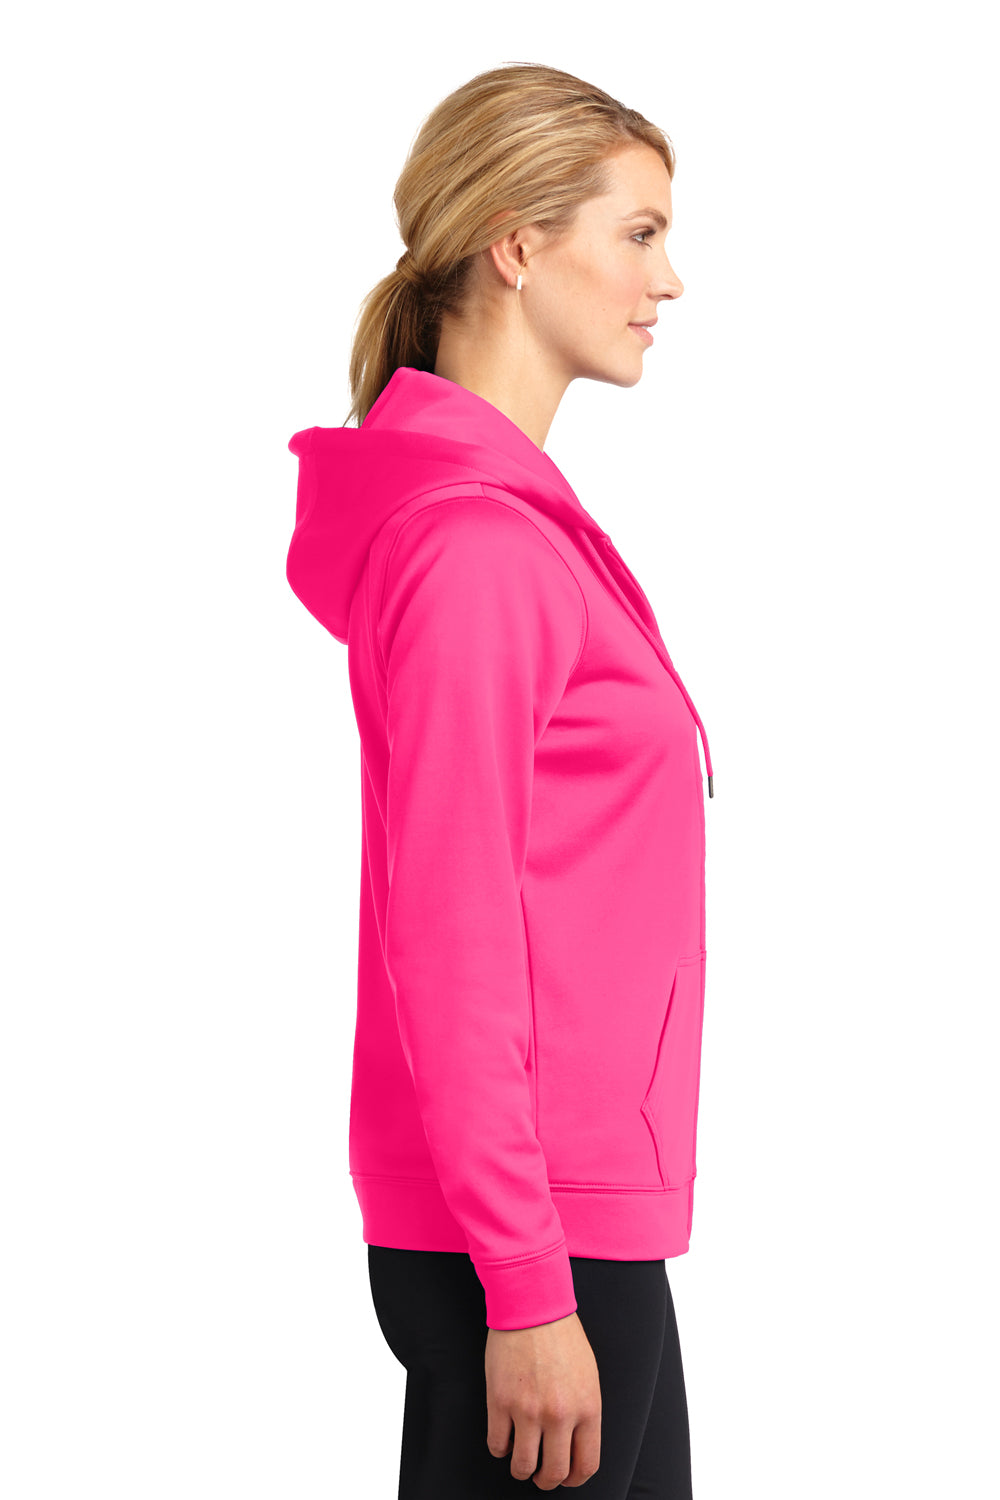 Sport-Tek LST238 Womens Sport-Wick Moisture Wicking Fleece Full Zip Hooded Sweatshirt Hoodie Neon Pink Side